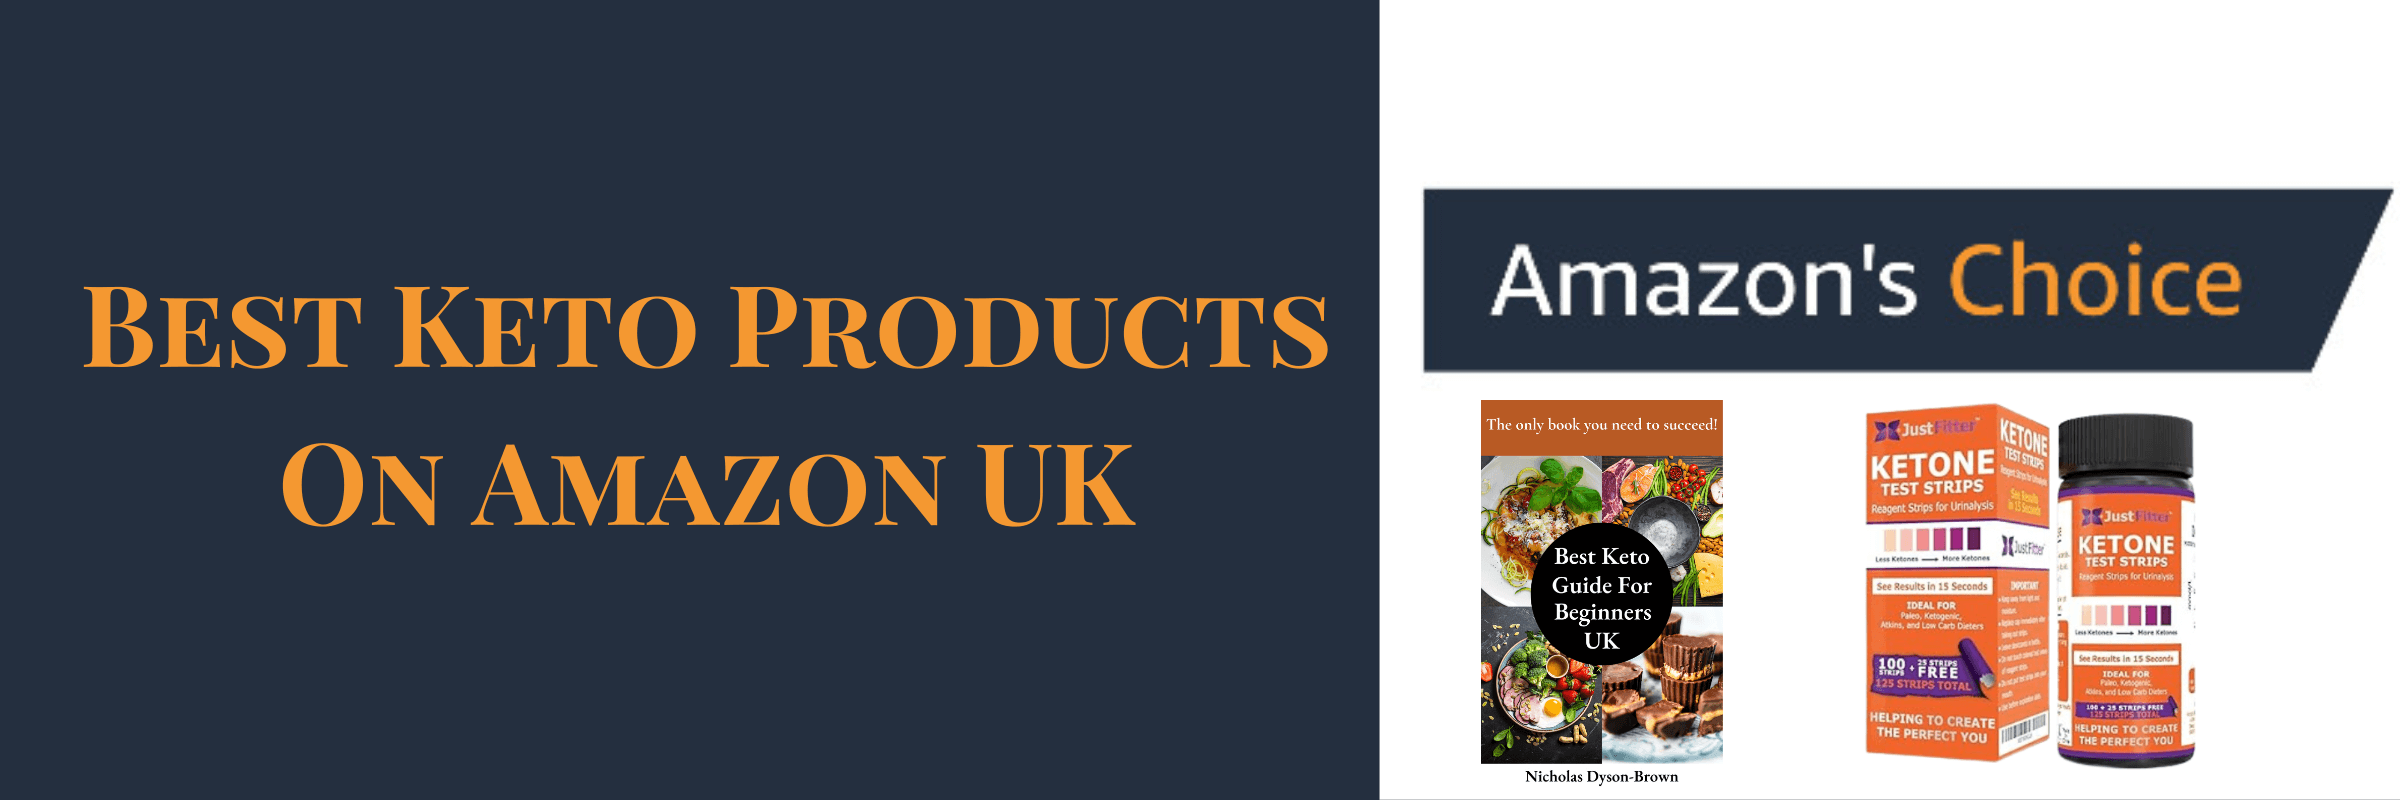 Best Keto Products On Amazon UK (1)